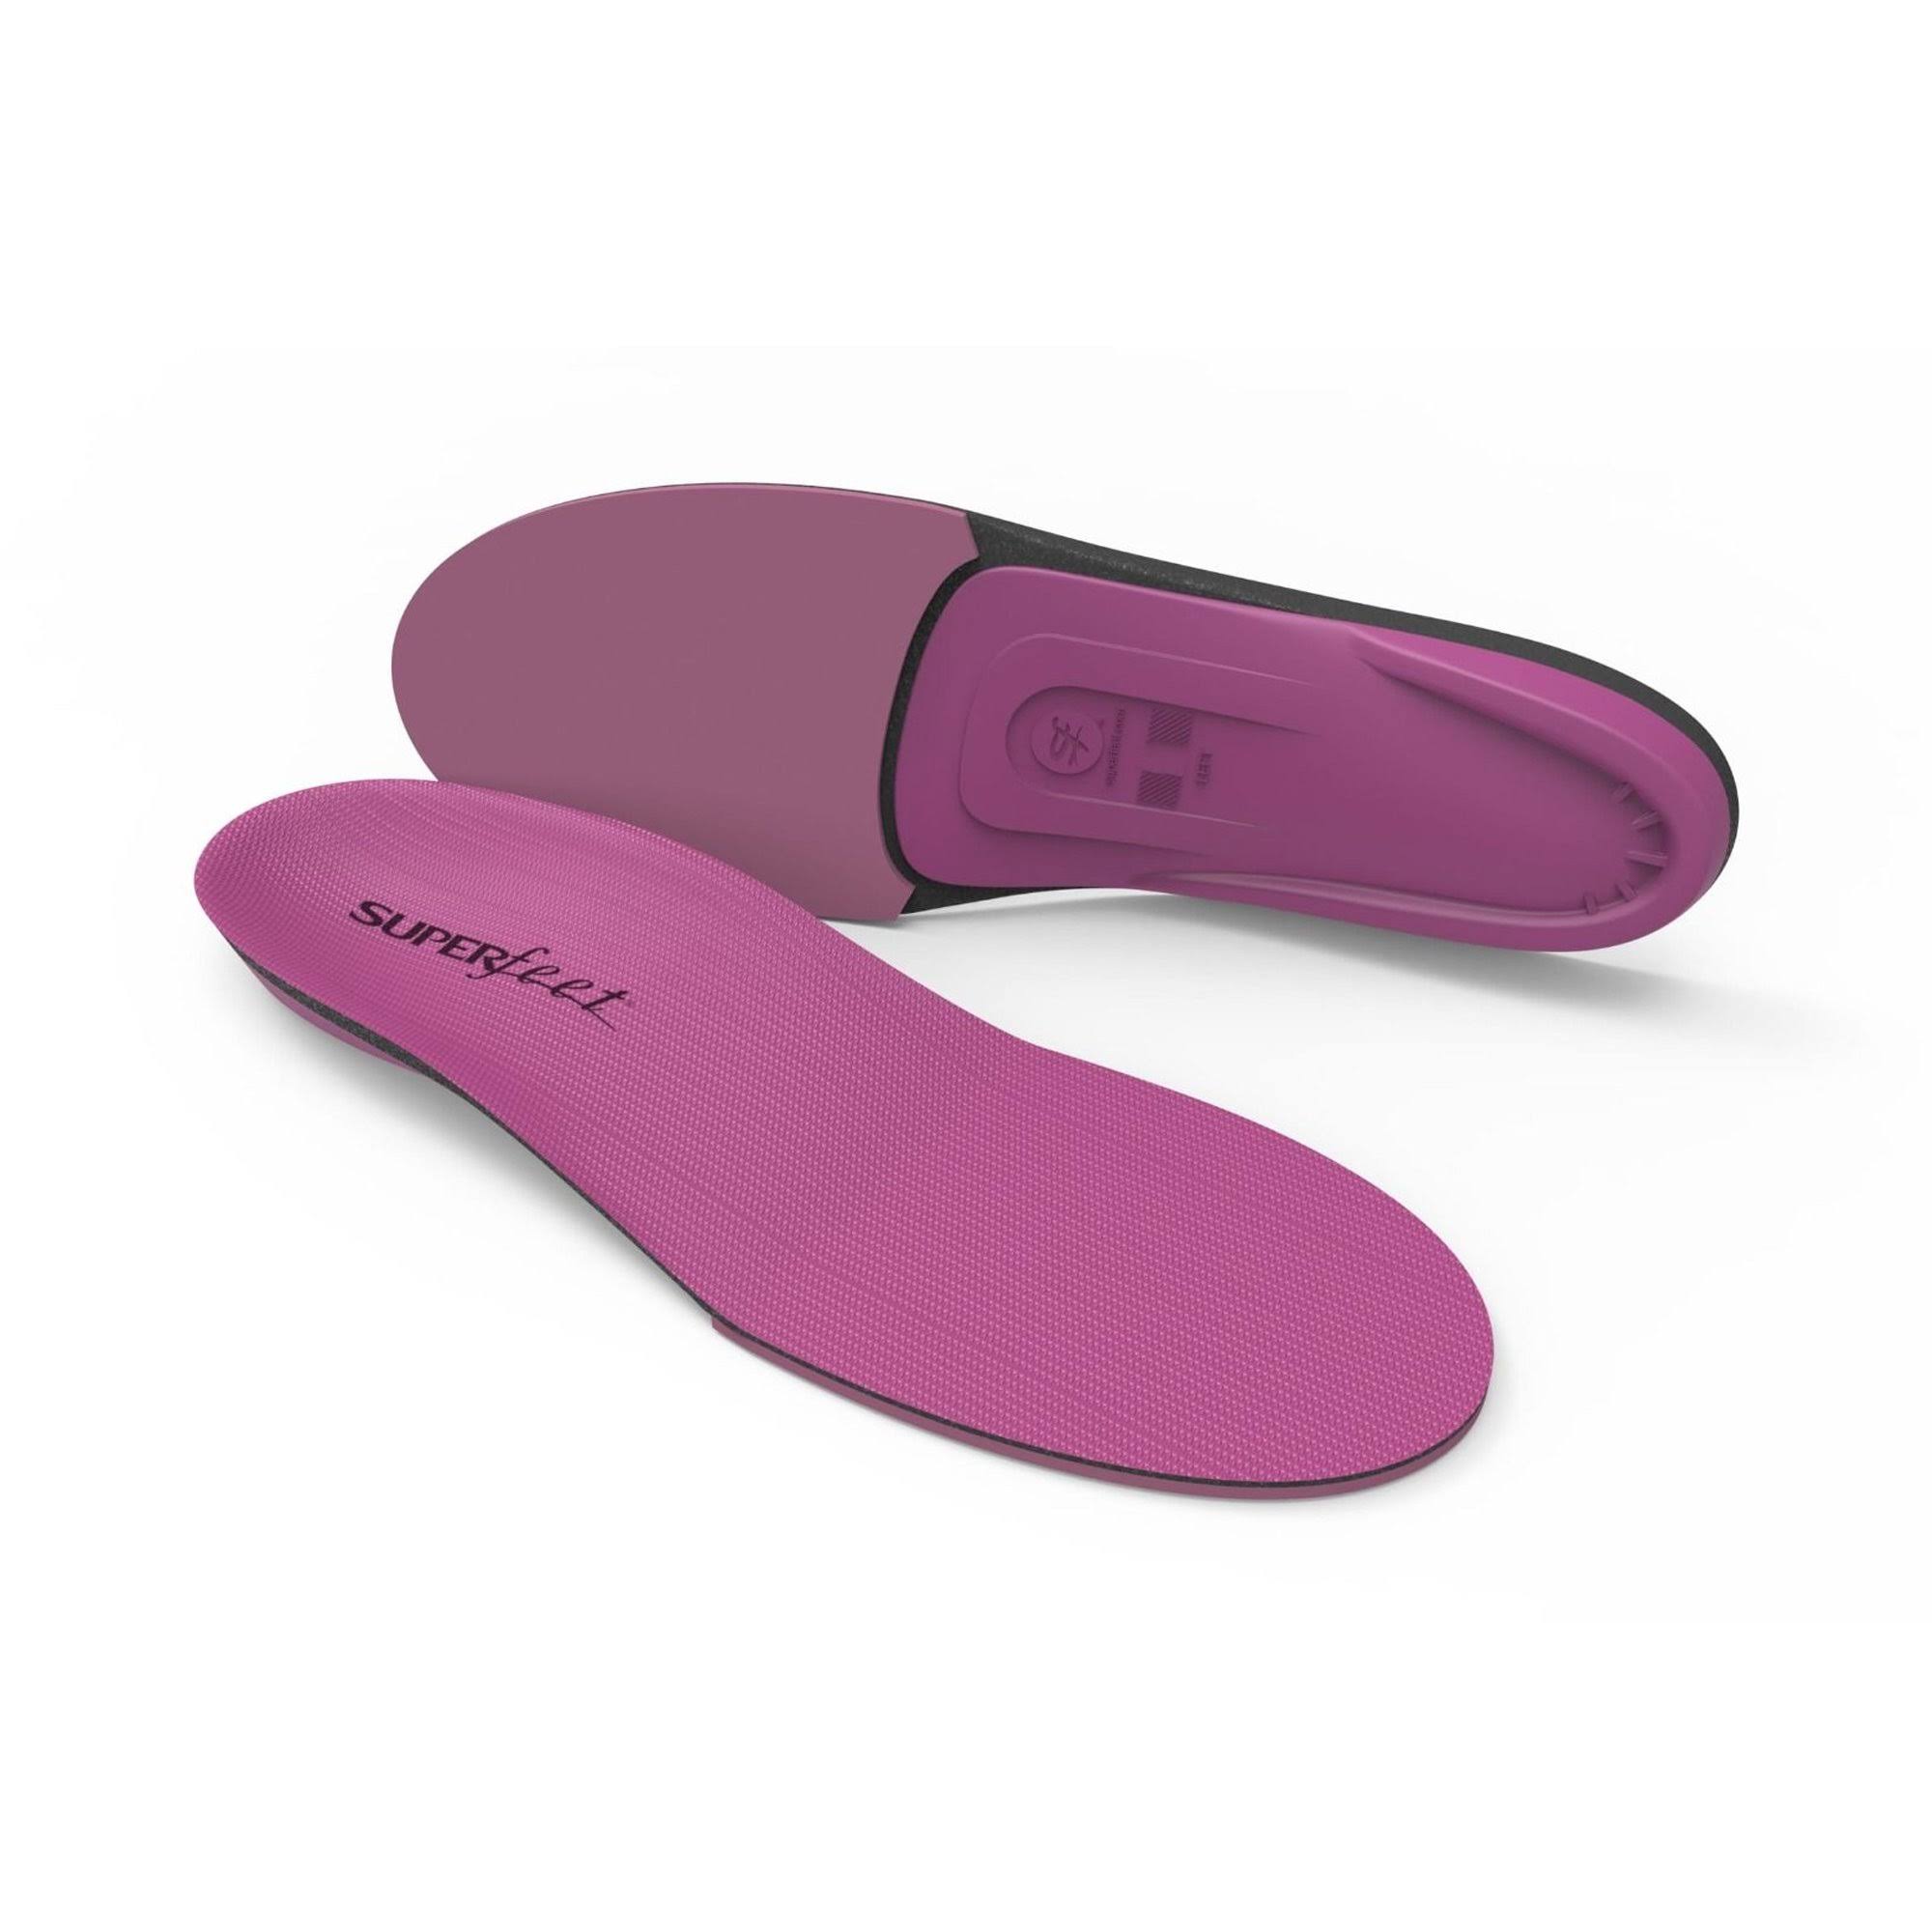 Superfeet Premium Shoe Insoles - Berry, Size C, Medium